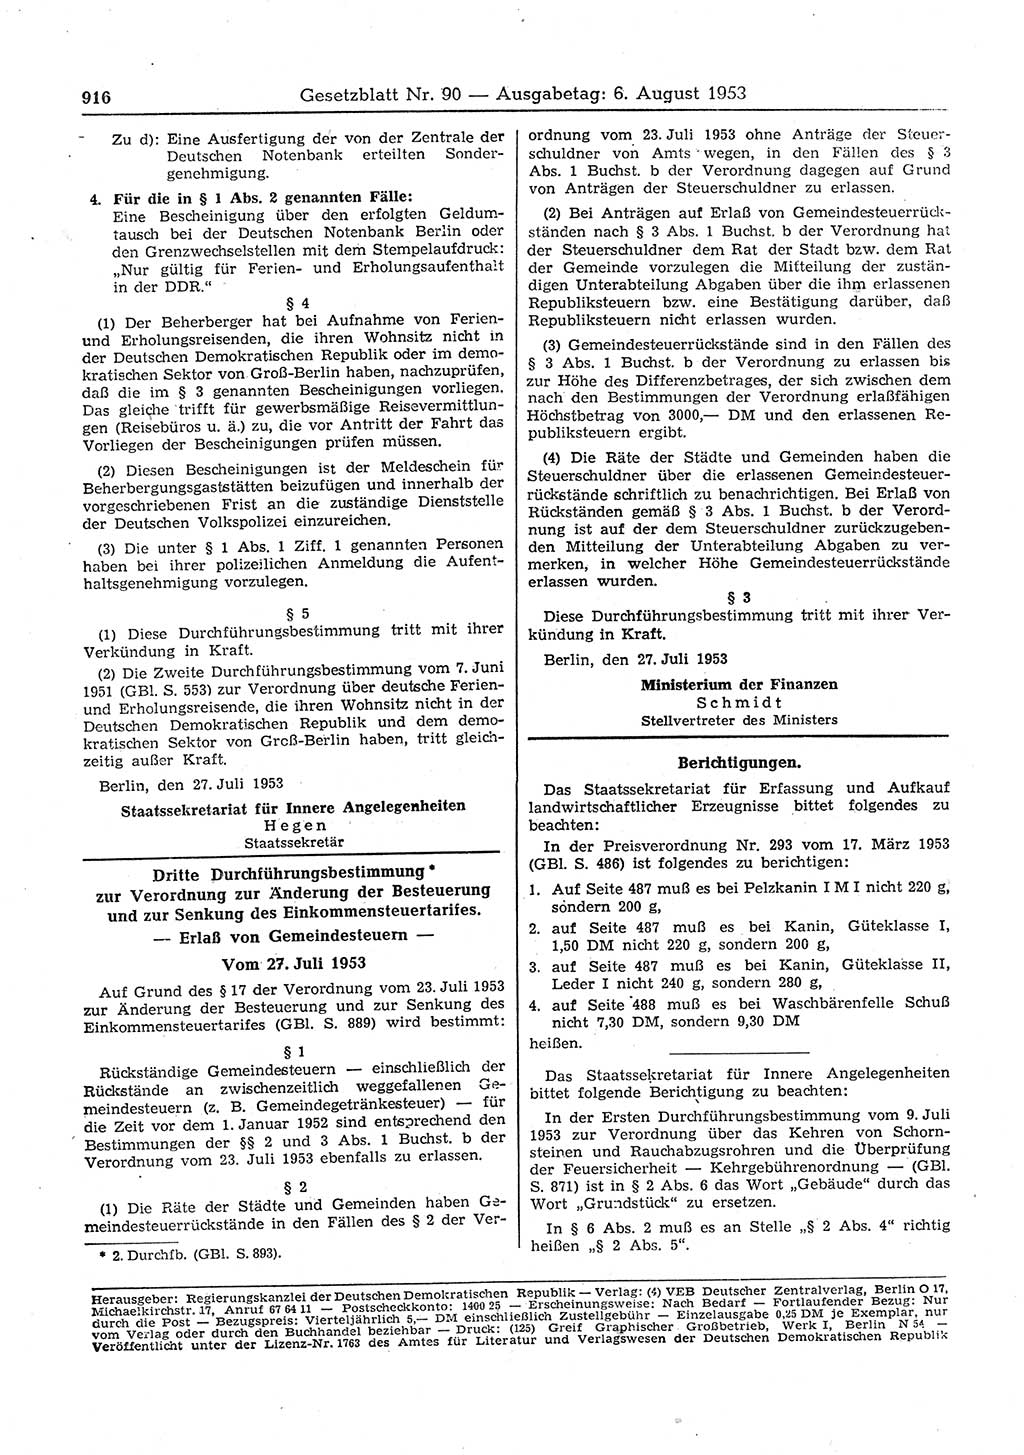 Gesetzblatt (GBl.) der Deutschen Demokratischen Republik (DDR) 1953, Seite 916 (GBl. DDR 1953, S. 916)